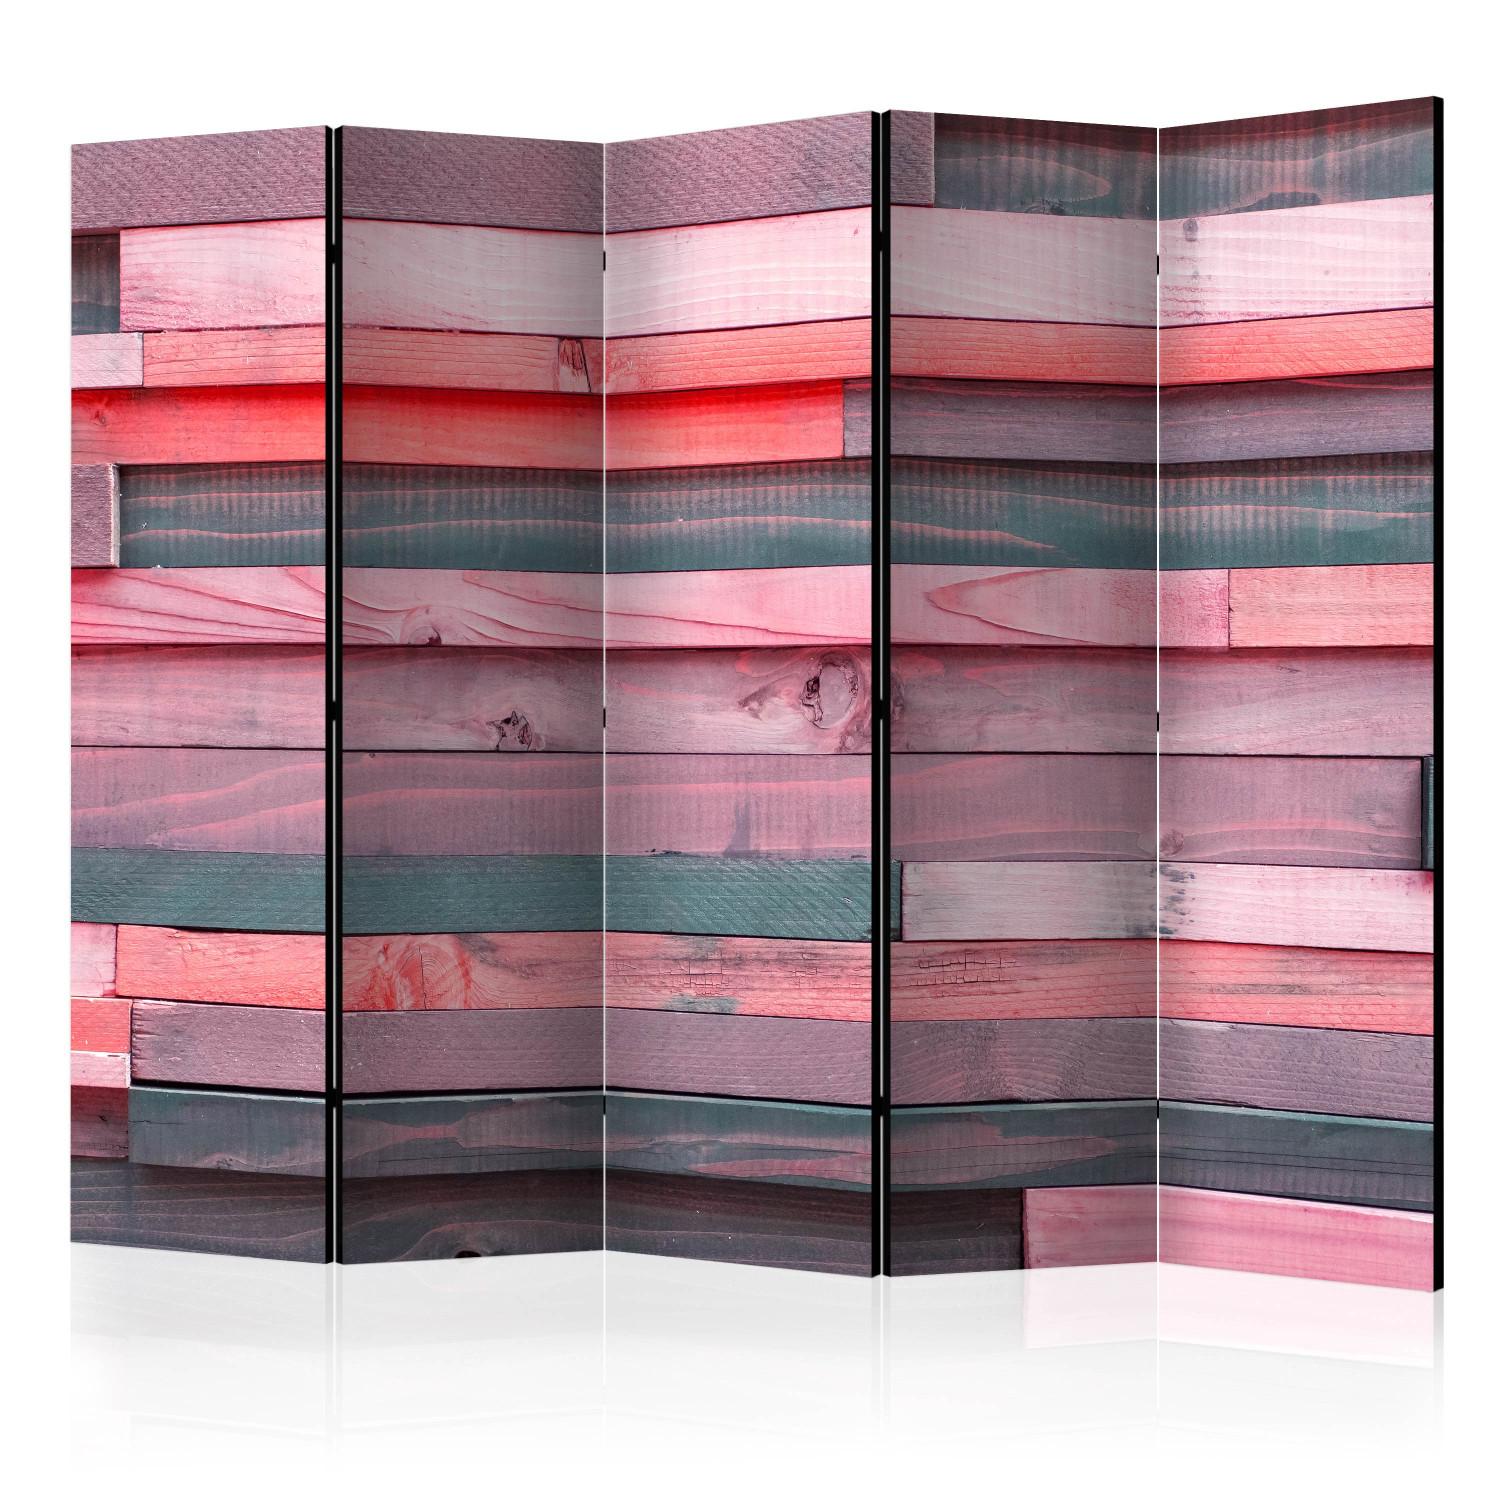 Biombo barato Casa rosada II (5 partes) - listones de madera en tonos rosados